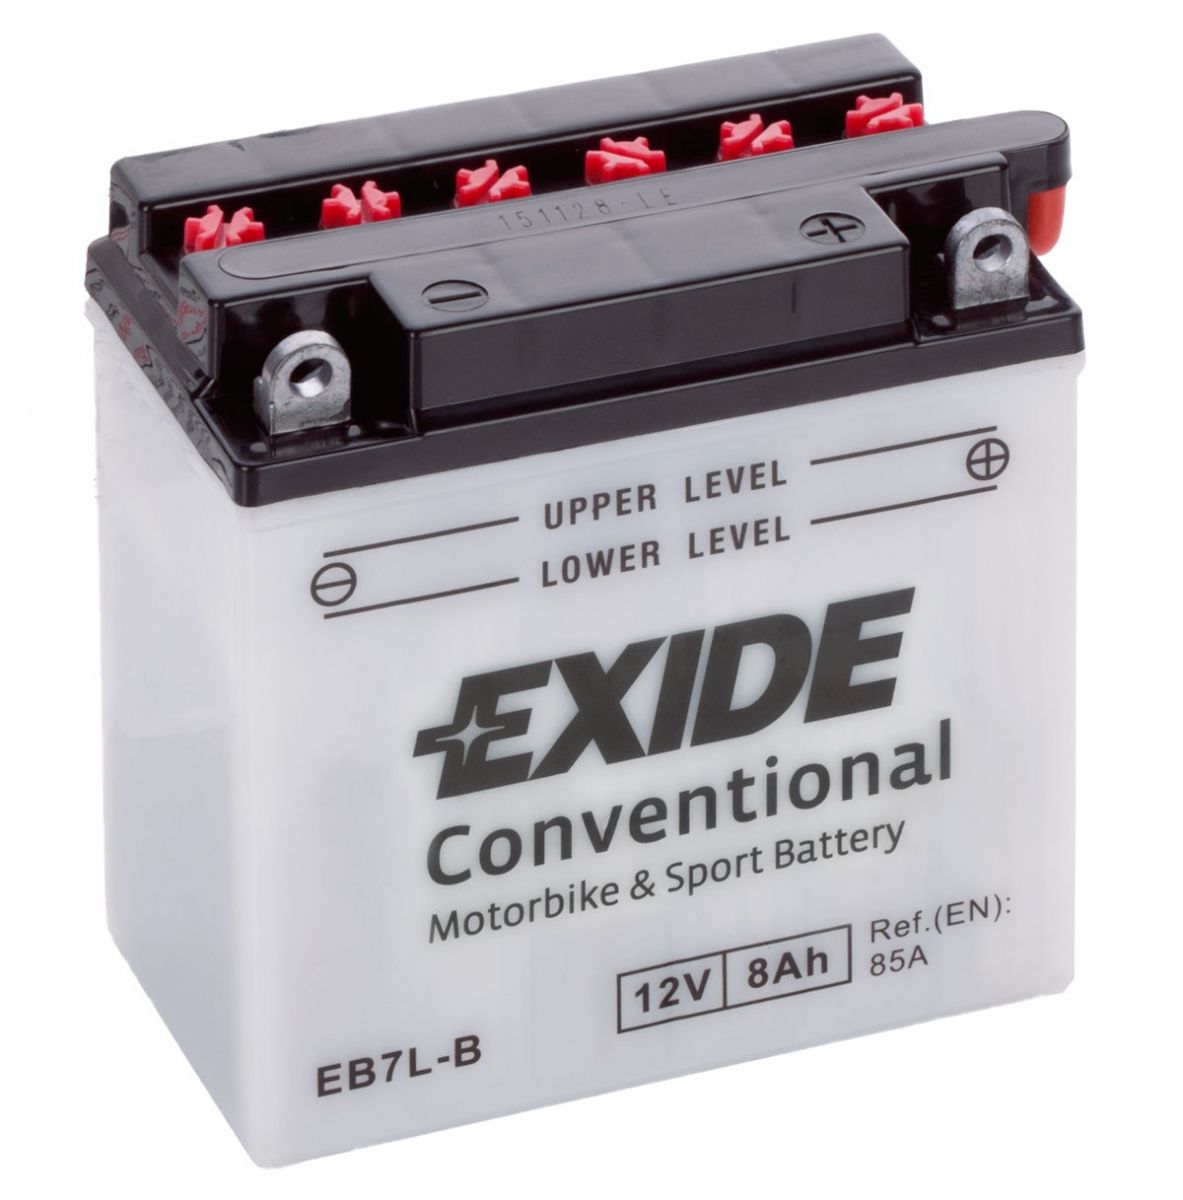 Аккумулятор EXIDE мото Conventional 8Ah 85A (EN) Кислотный EXIDE EB7LB